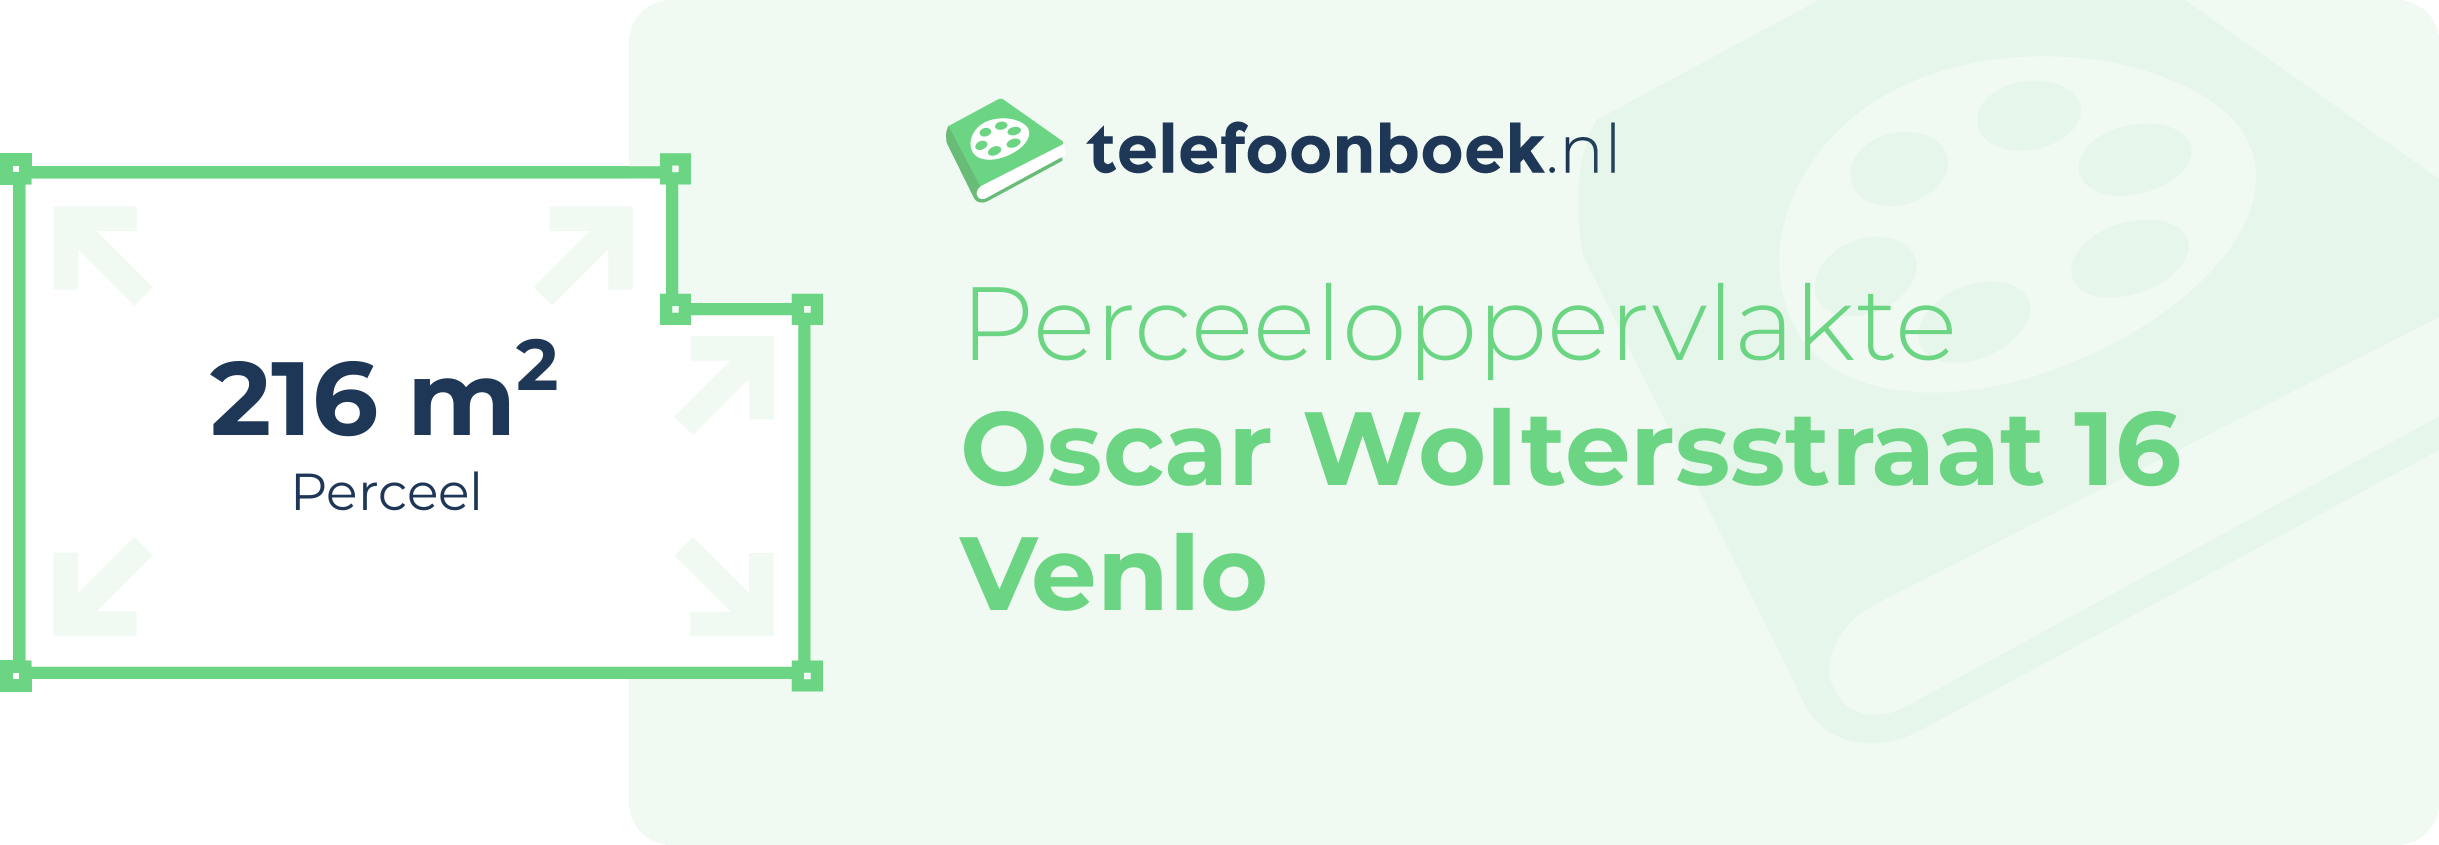 Perceeloppervlakte Oscar Woltersstraat 16 Venlo